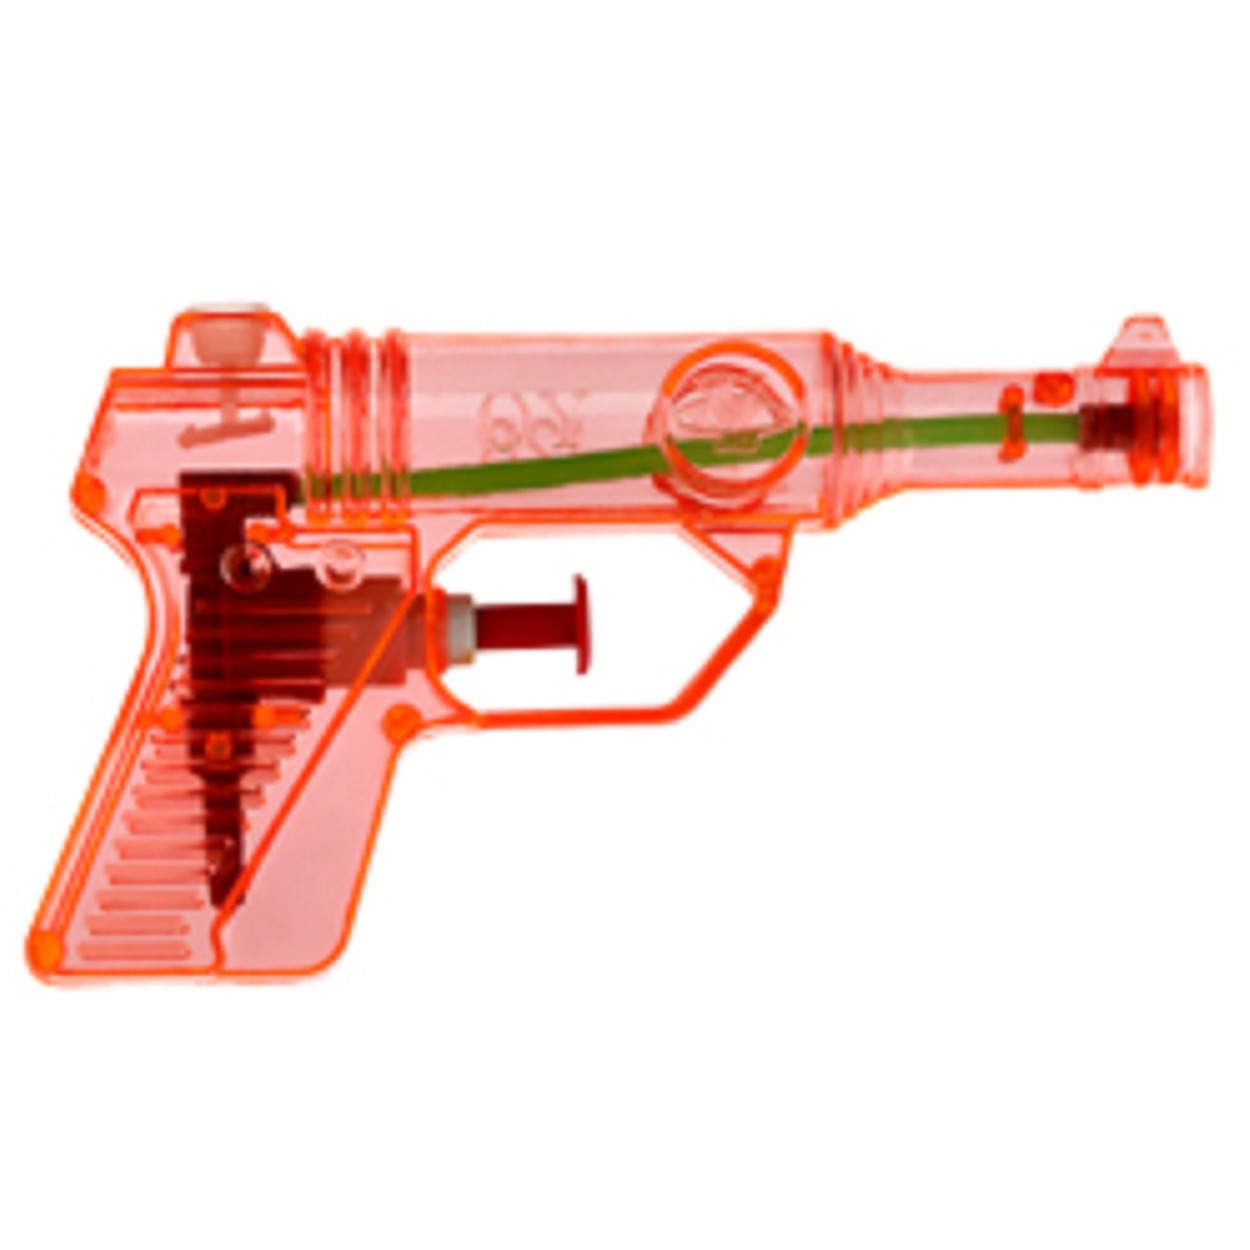 Waterpistool/waterpistolen rood 13 cm